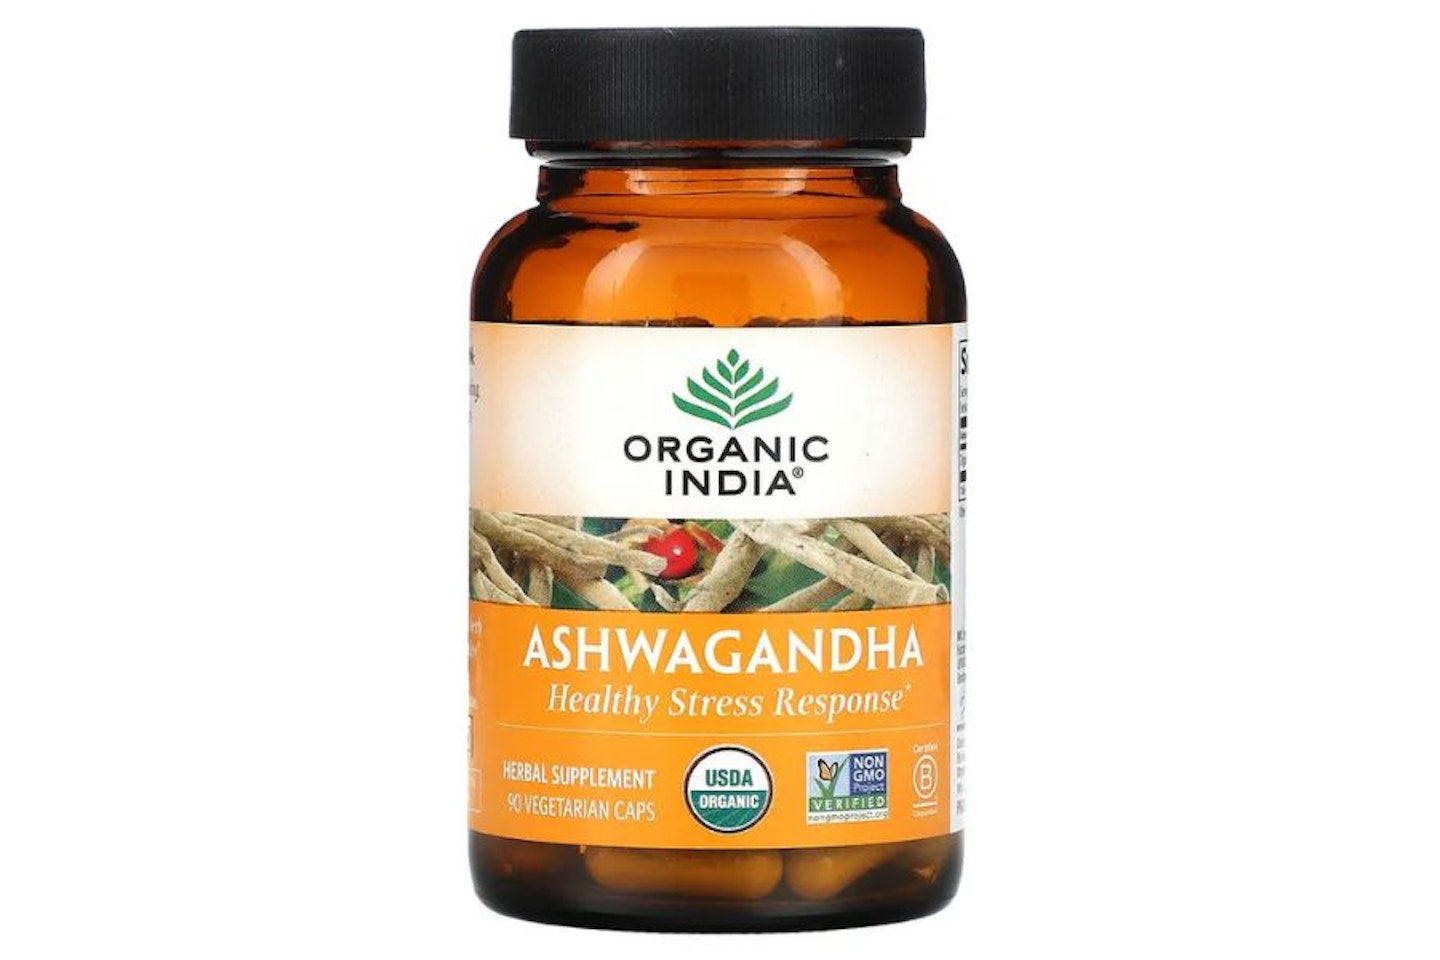 Organic India Ashwagandha - best organic ashwagandha 